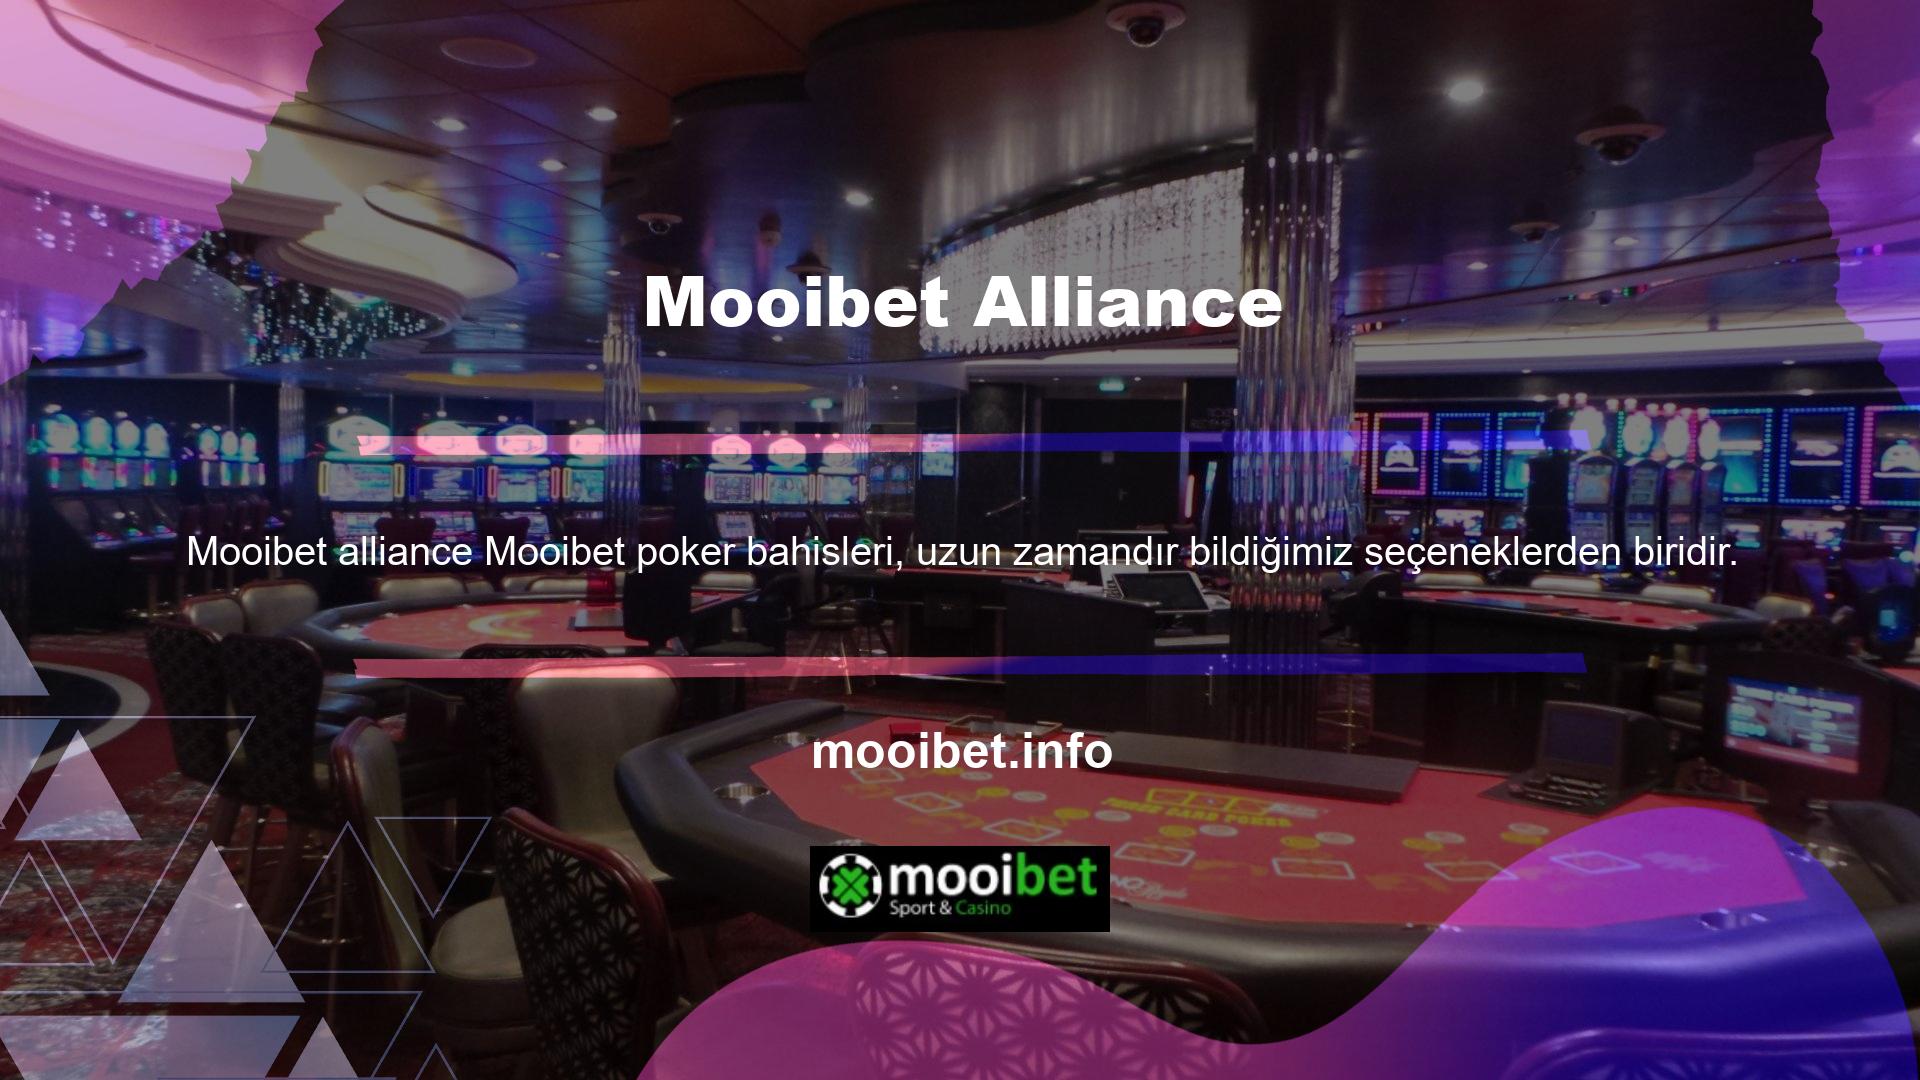 Mooibet alliance